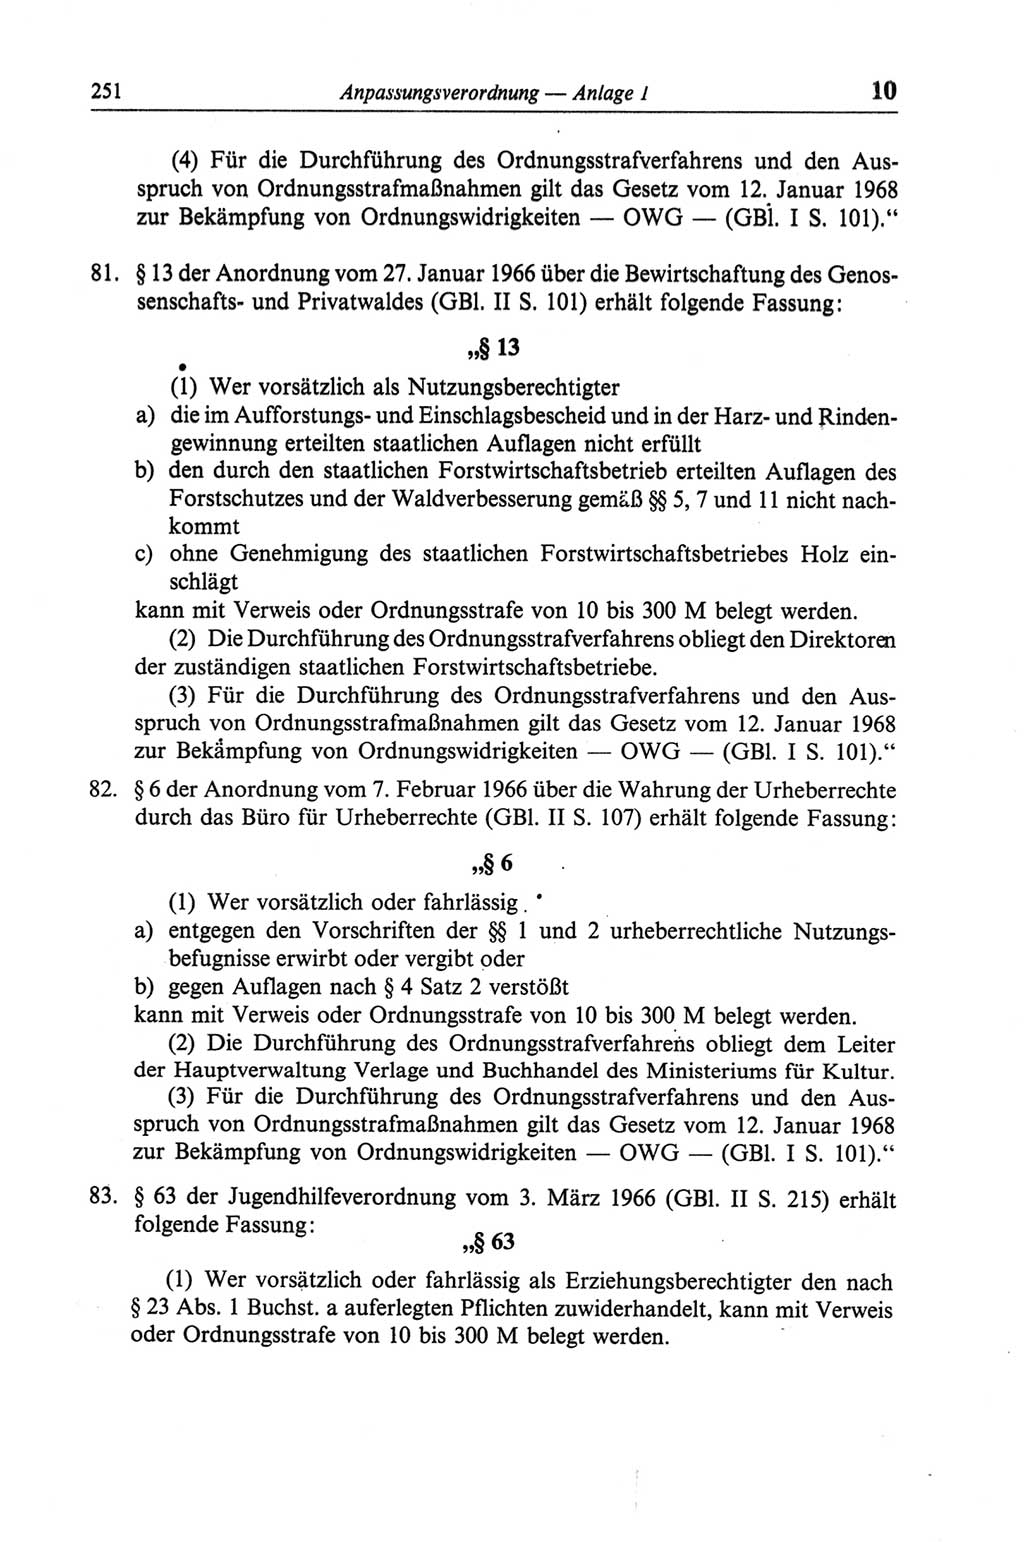 Strafgesetzbuch (StGB) der Deutschen Demokratischen Republik (DDR) und angrenzende Gesetze und Bestimmungen 1968, Seite 251 (StGB Ges. Best. DDR 1968, S. 251)